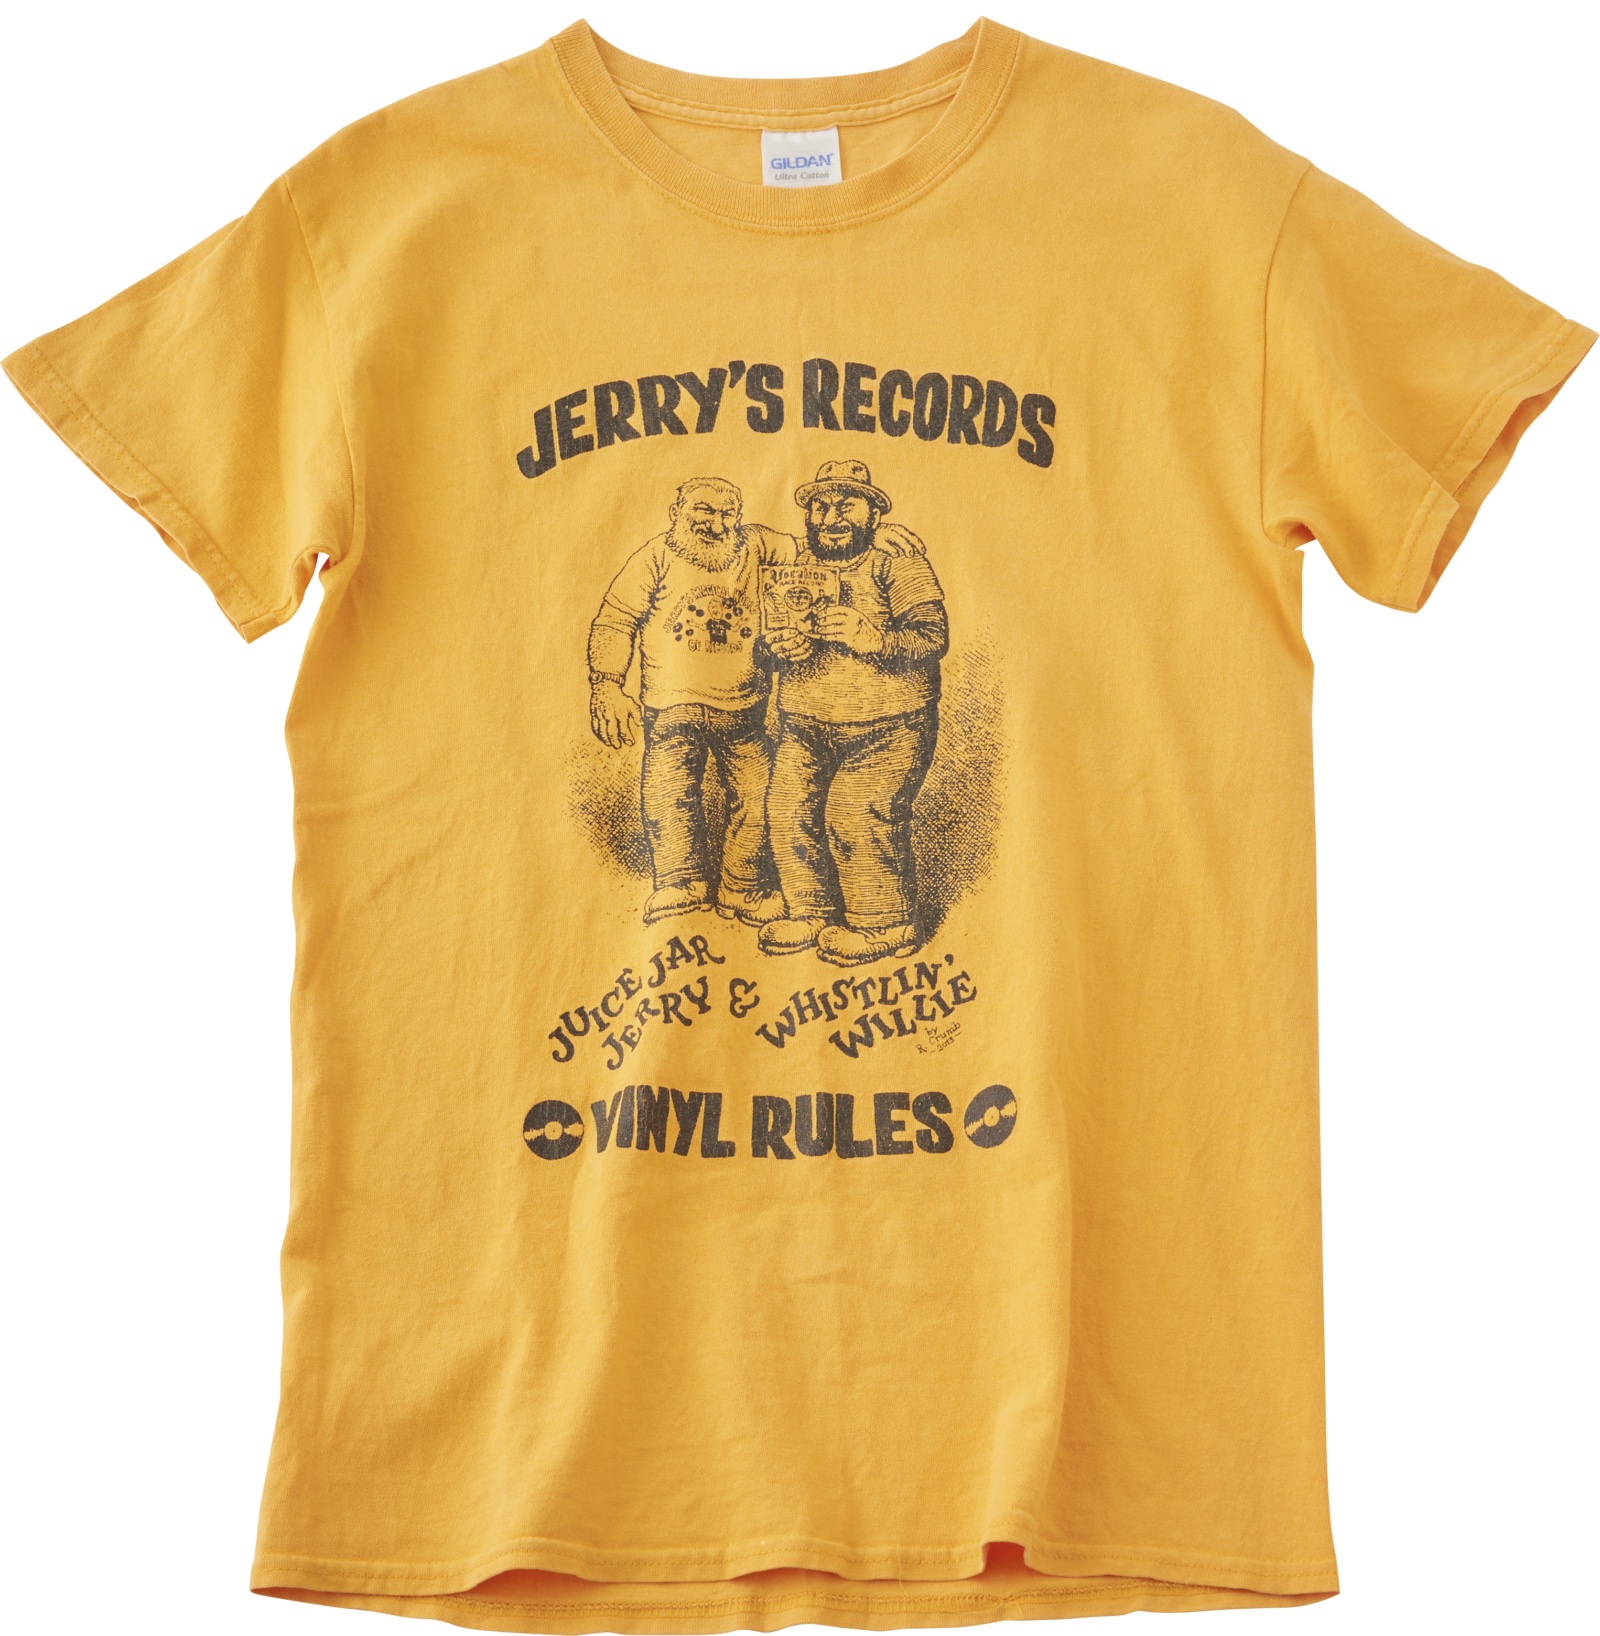 ロバート・クラムがピッツバーグのレコード店『Jerry’s records』のために作ったノベルティグッズ